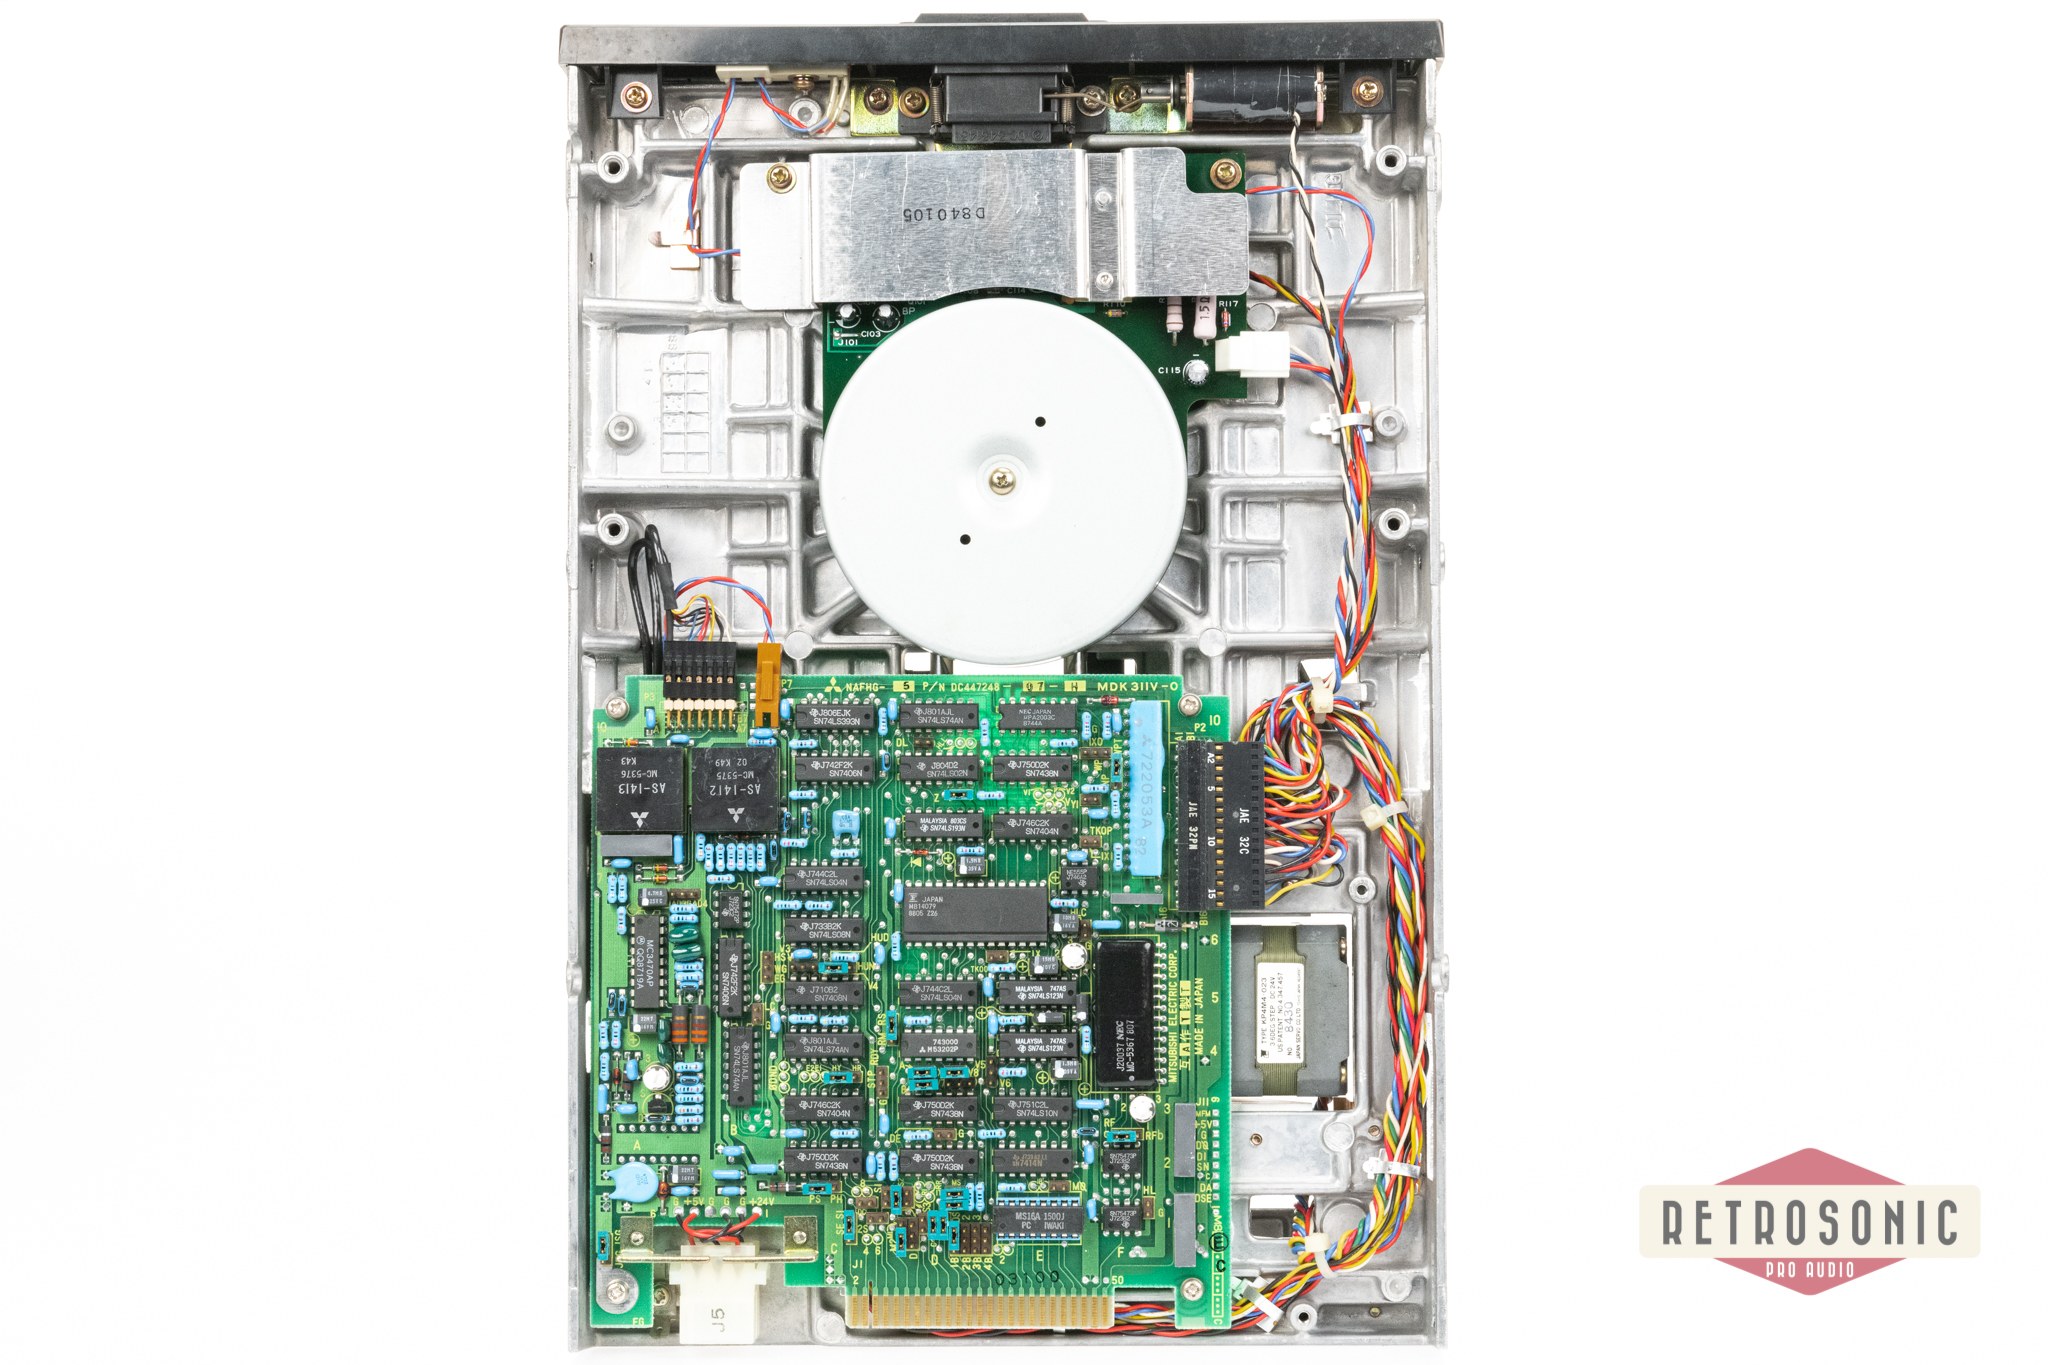 SSL Mitsubishi 8" Internal Floppy Drive (M2896-63-02U) 2 pcs bundle